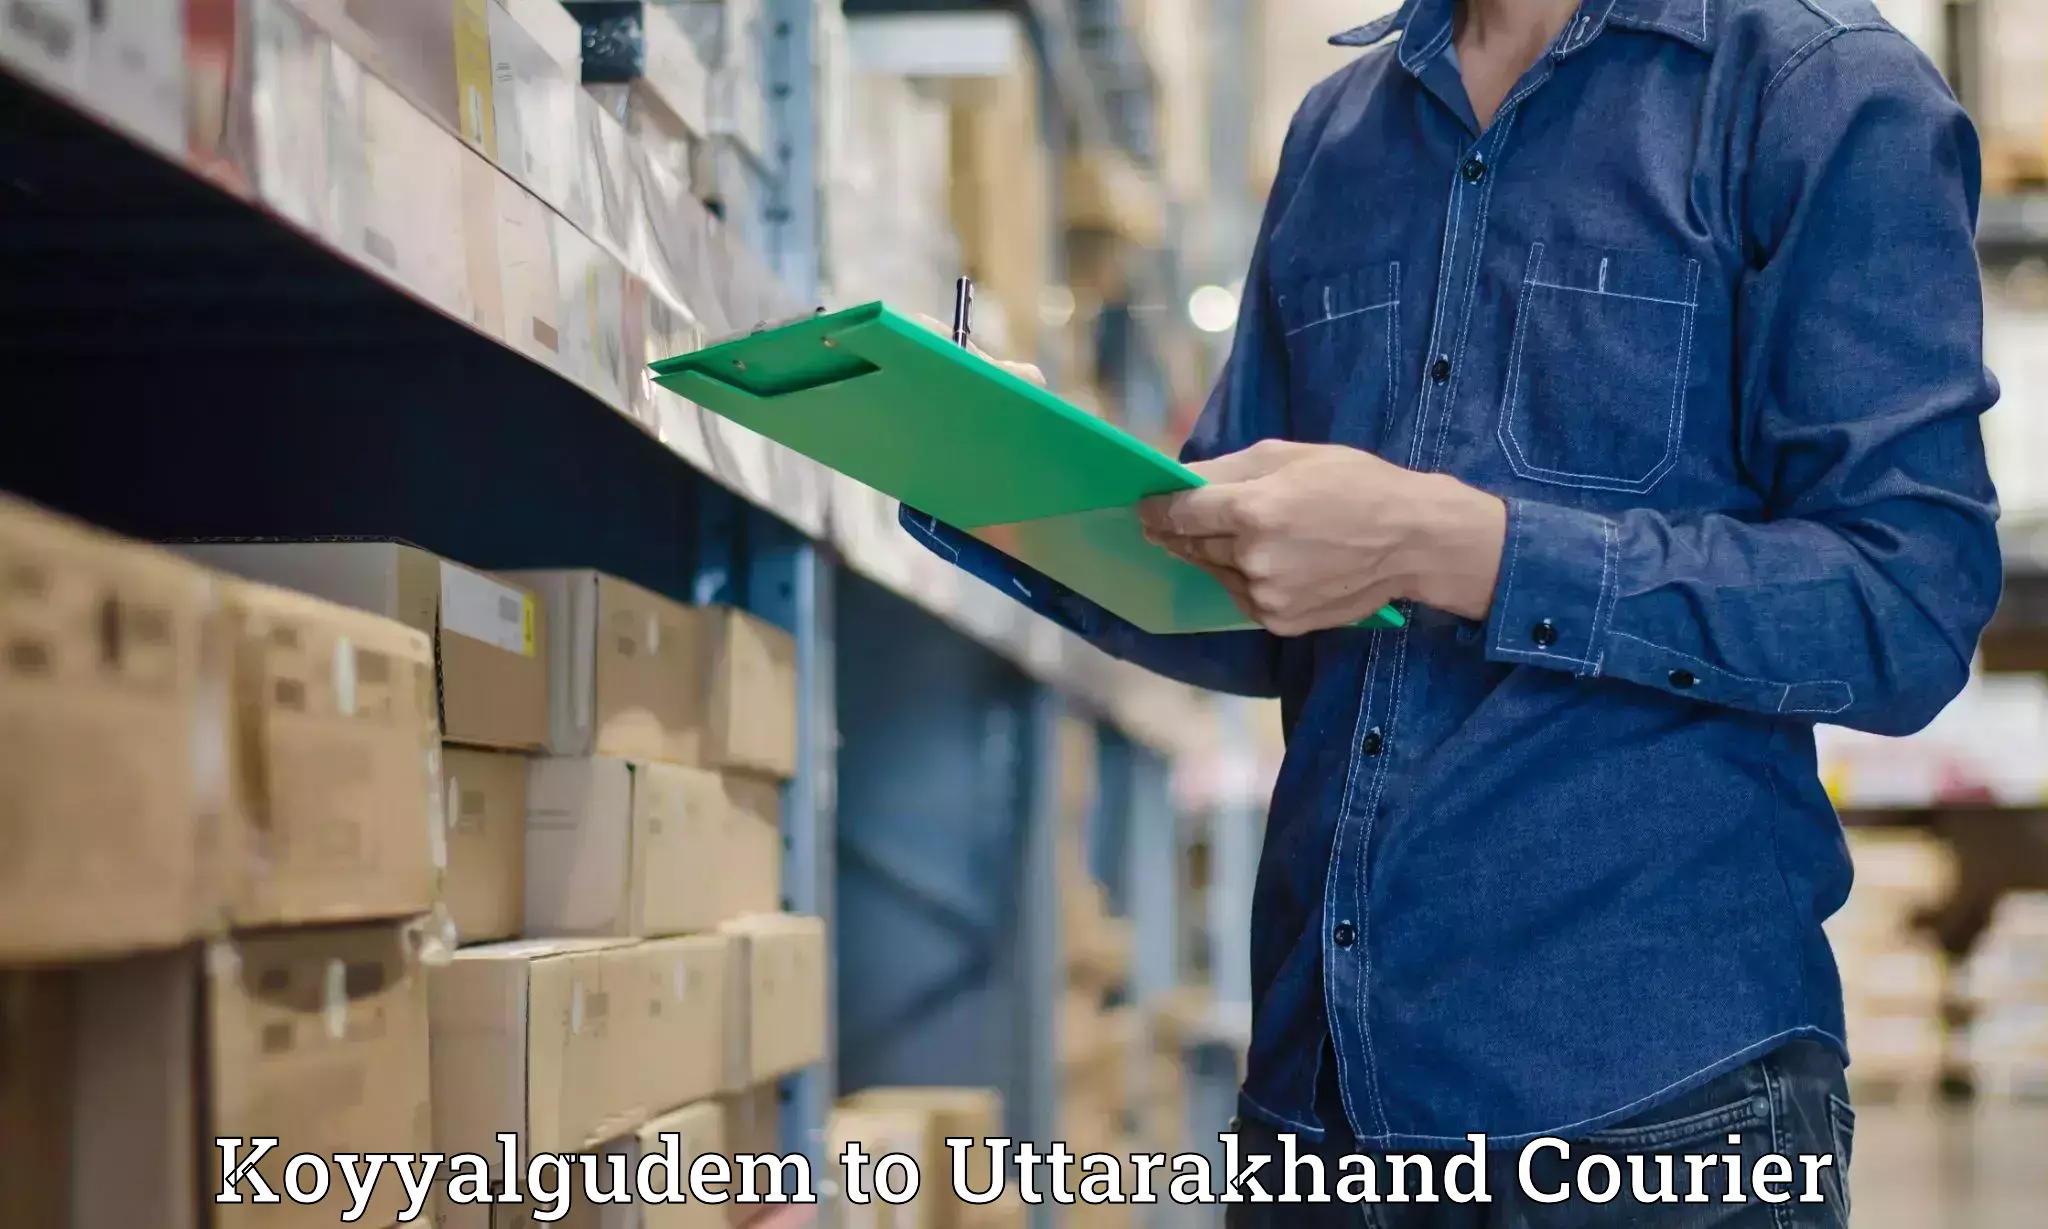 Reliable parcel services Koyyalgudem to Gopeshwar